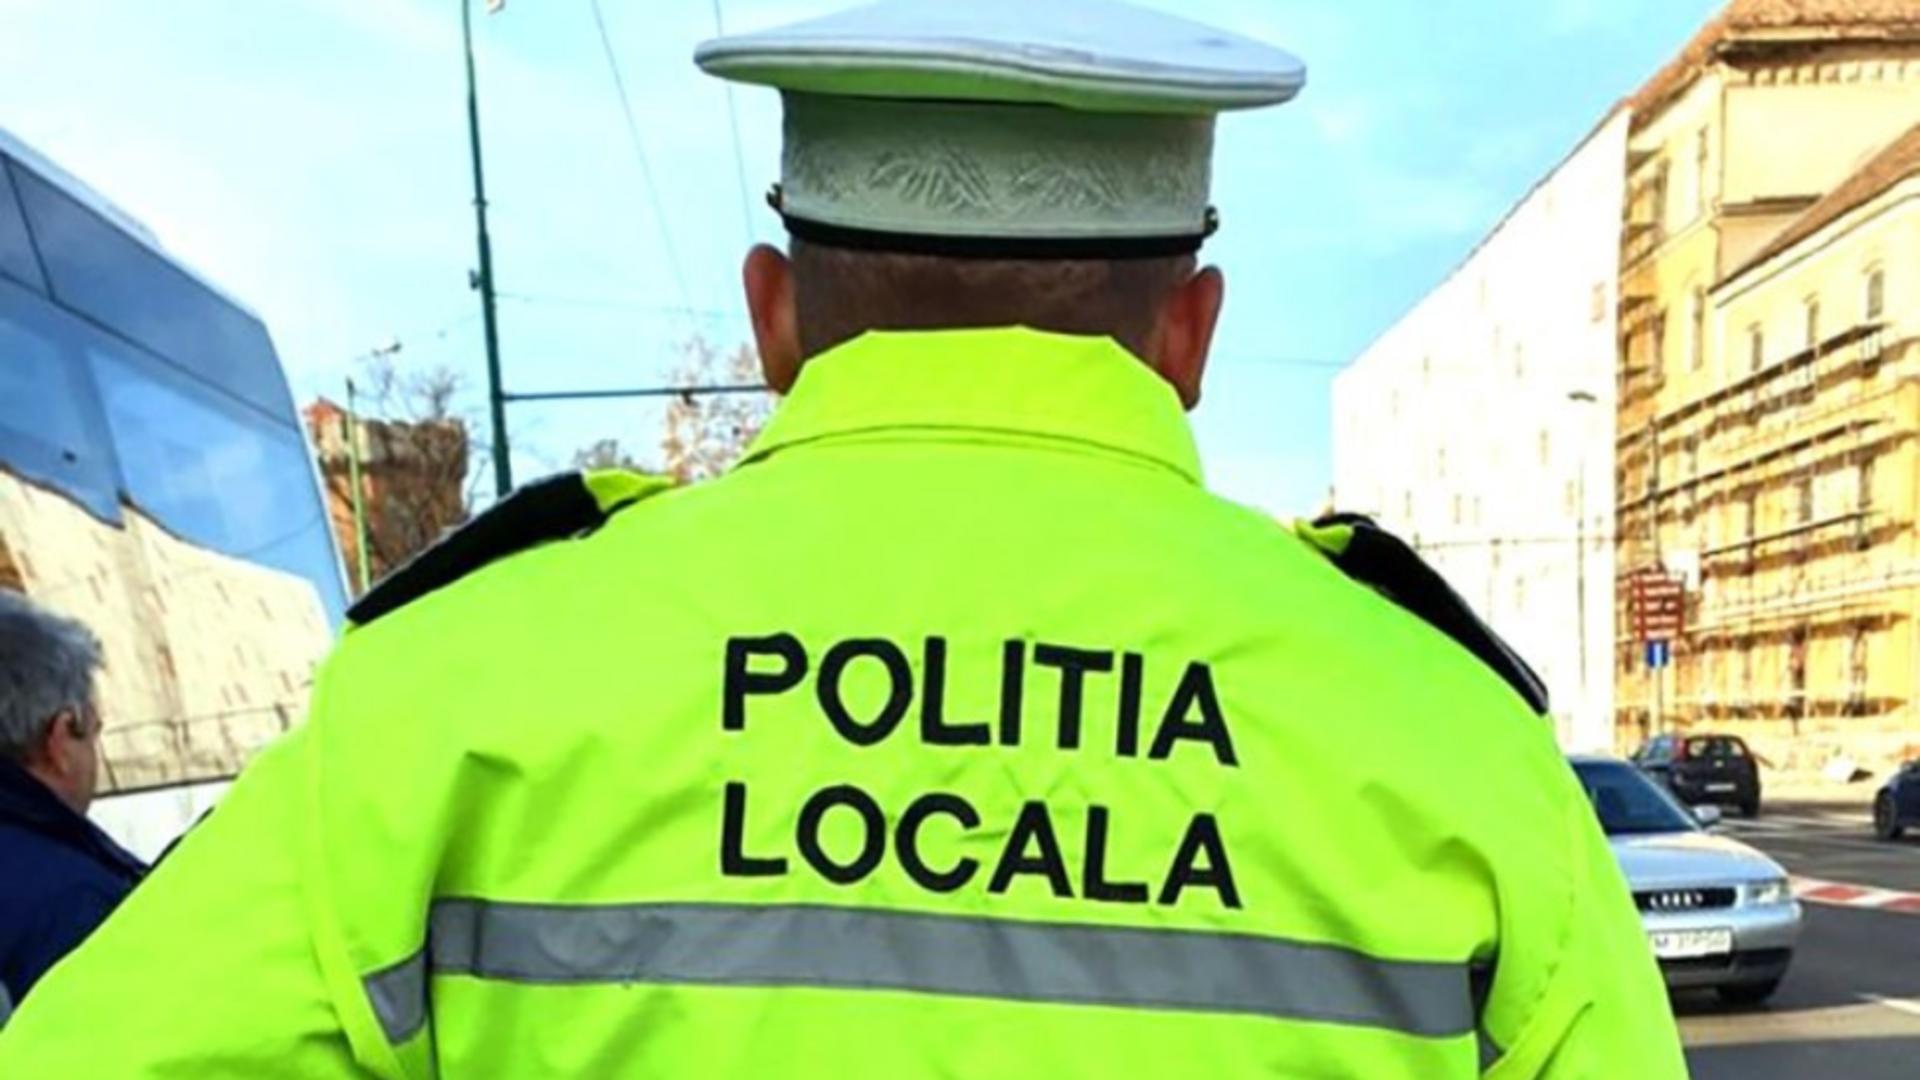 Polițist local - imagine cu notă sugestivă